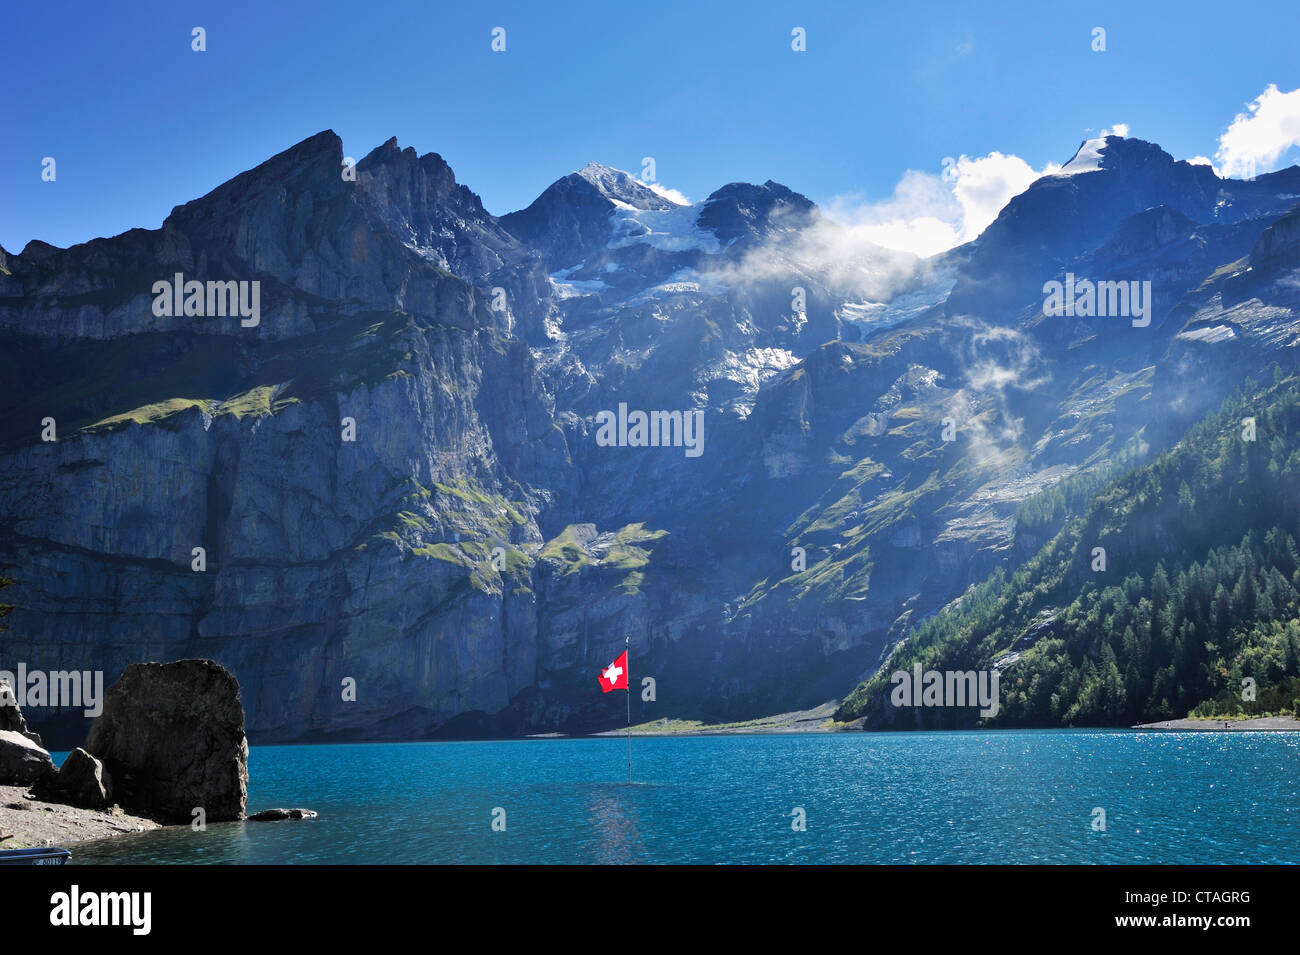 Drapeau suisse, lac Oeschinen Blüemlisalp, Site du patrimoine mondial de l'UNESCO Jungfrau-Aletsch, zone protégée, Oberland Bernois, canton Banque D'Images